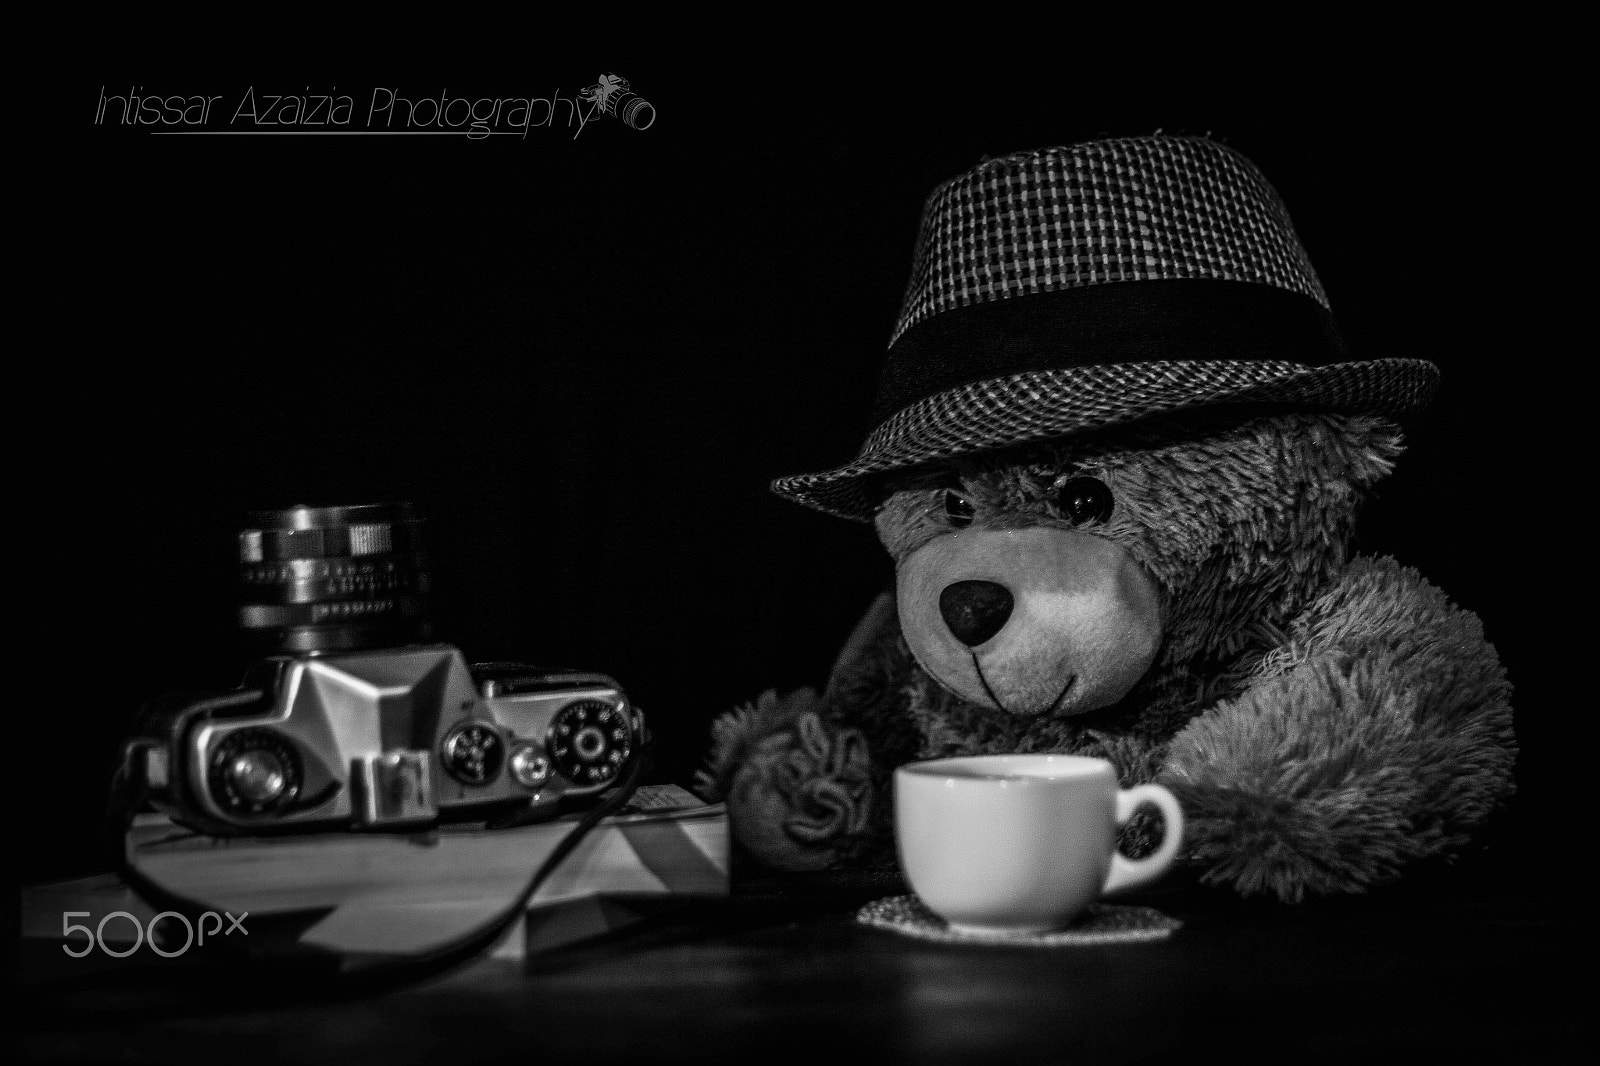 Canon EOS 50D + Canon EF 50mm F1.8 II sample photo. Teddy bear photography